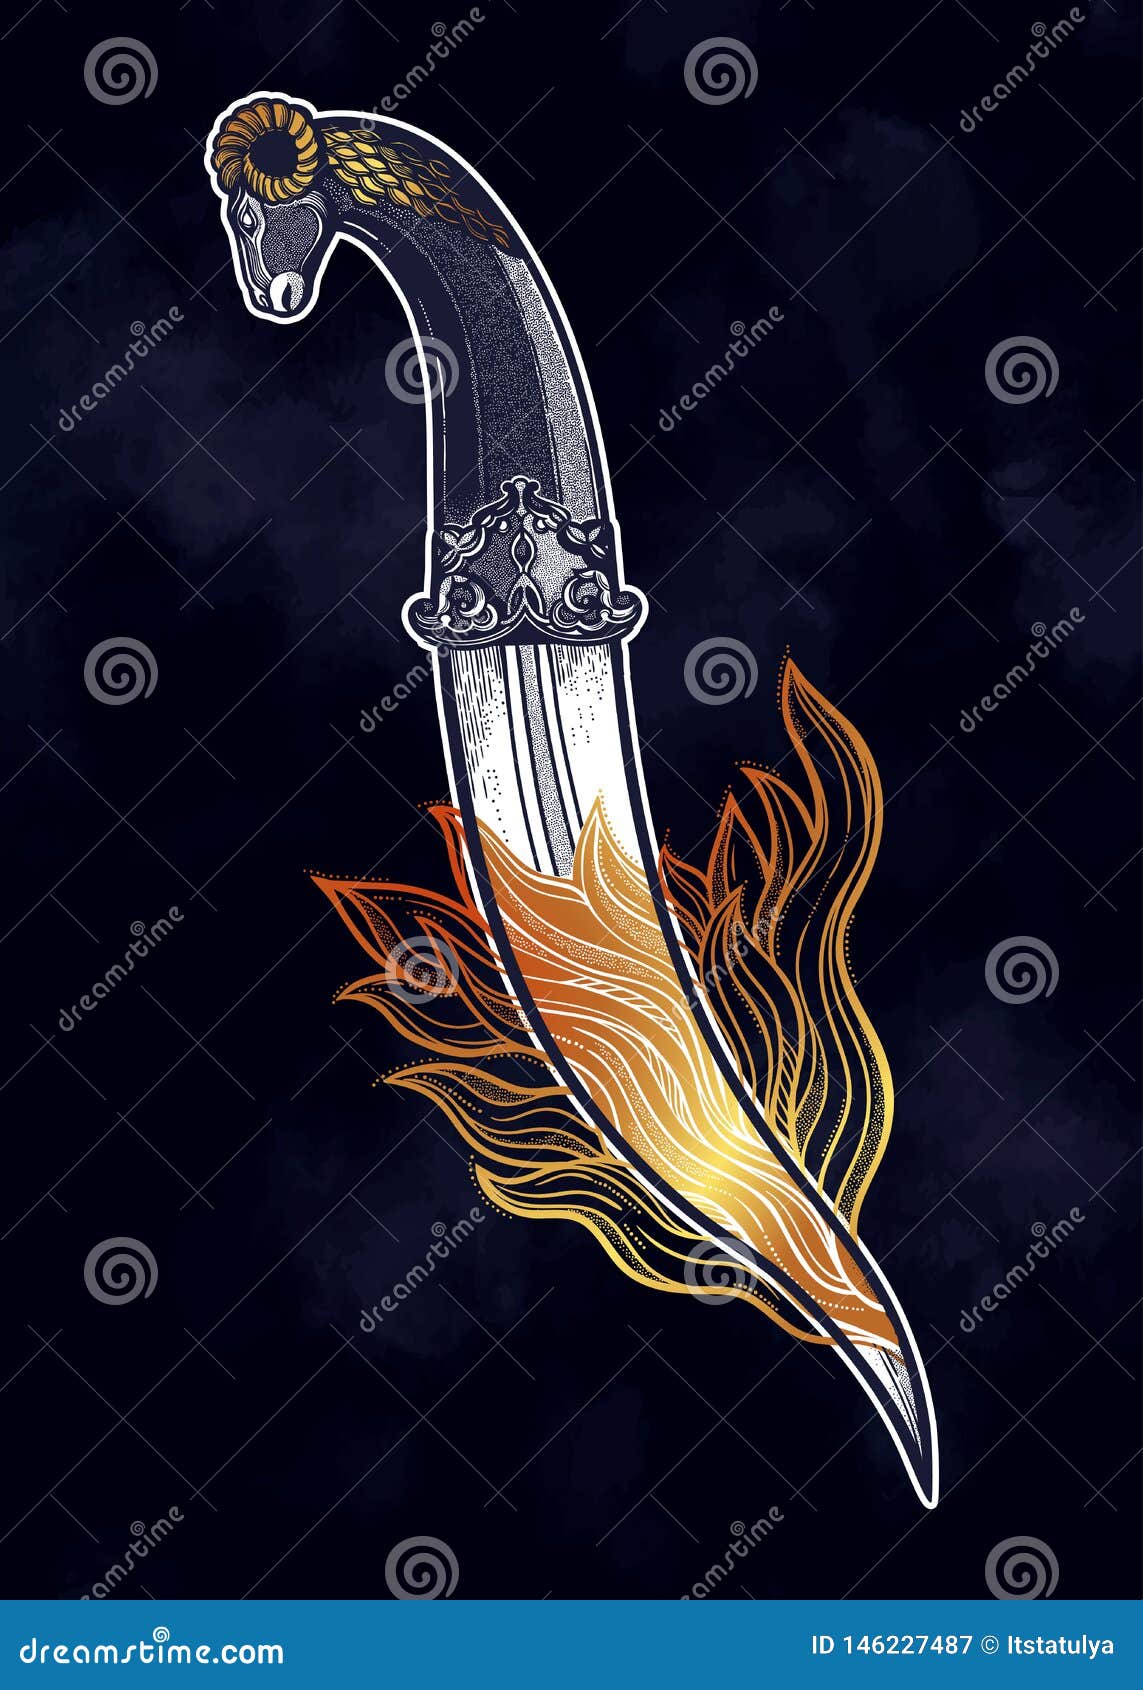 Fire Sword Tattoo Stock Illustrations – 461 Fire Sword Tattoo Stock  Illustrations, Vectors & Clipart - Dreamstime